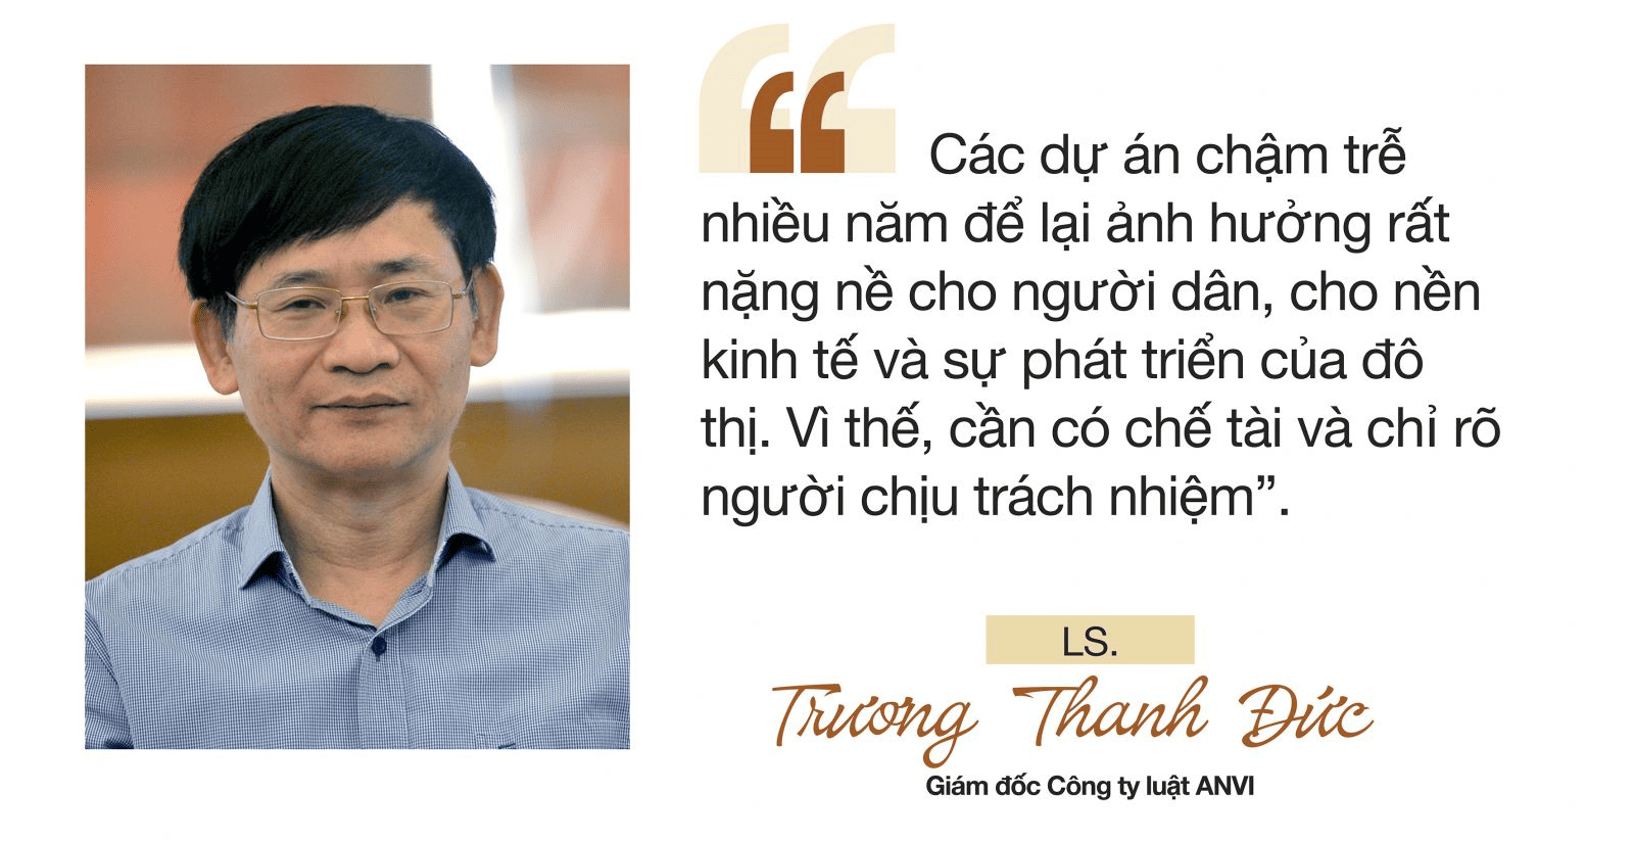 LS. Trương Thanh Đức cho ý kiến về xử lý dự án chậm tiến độ